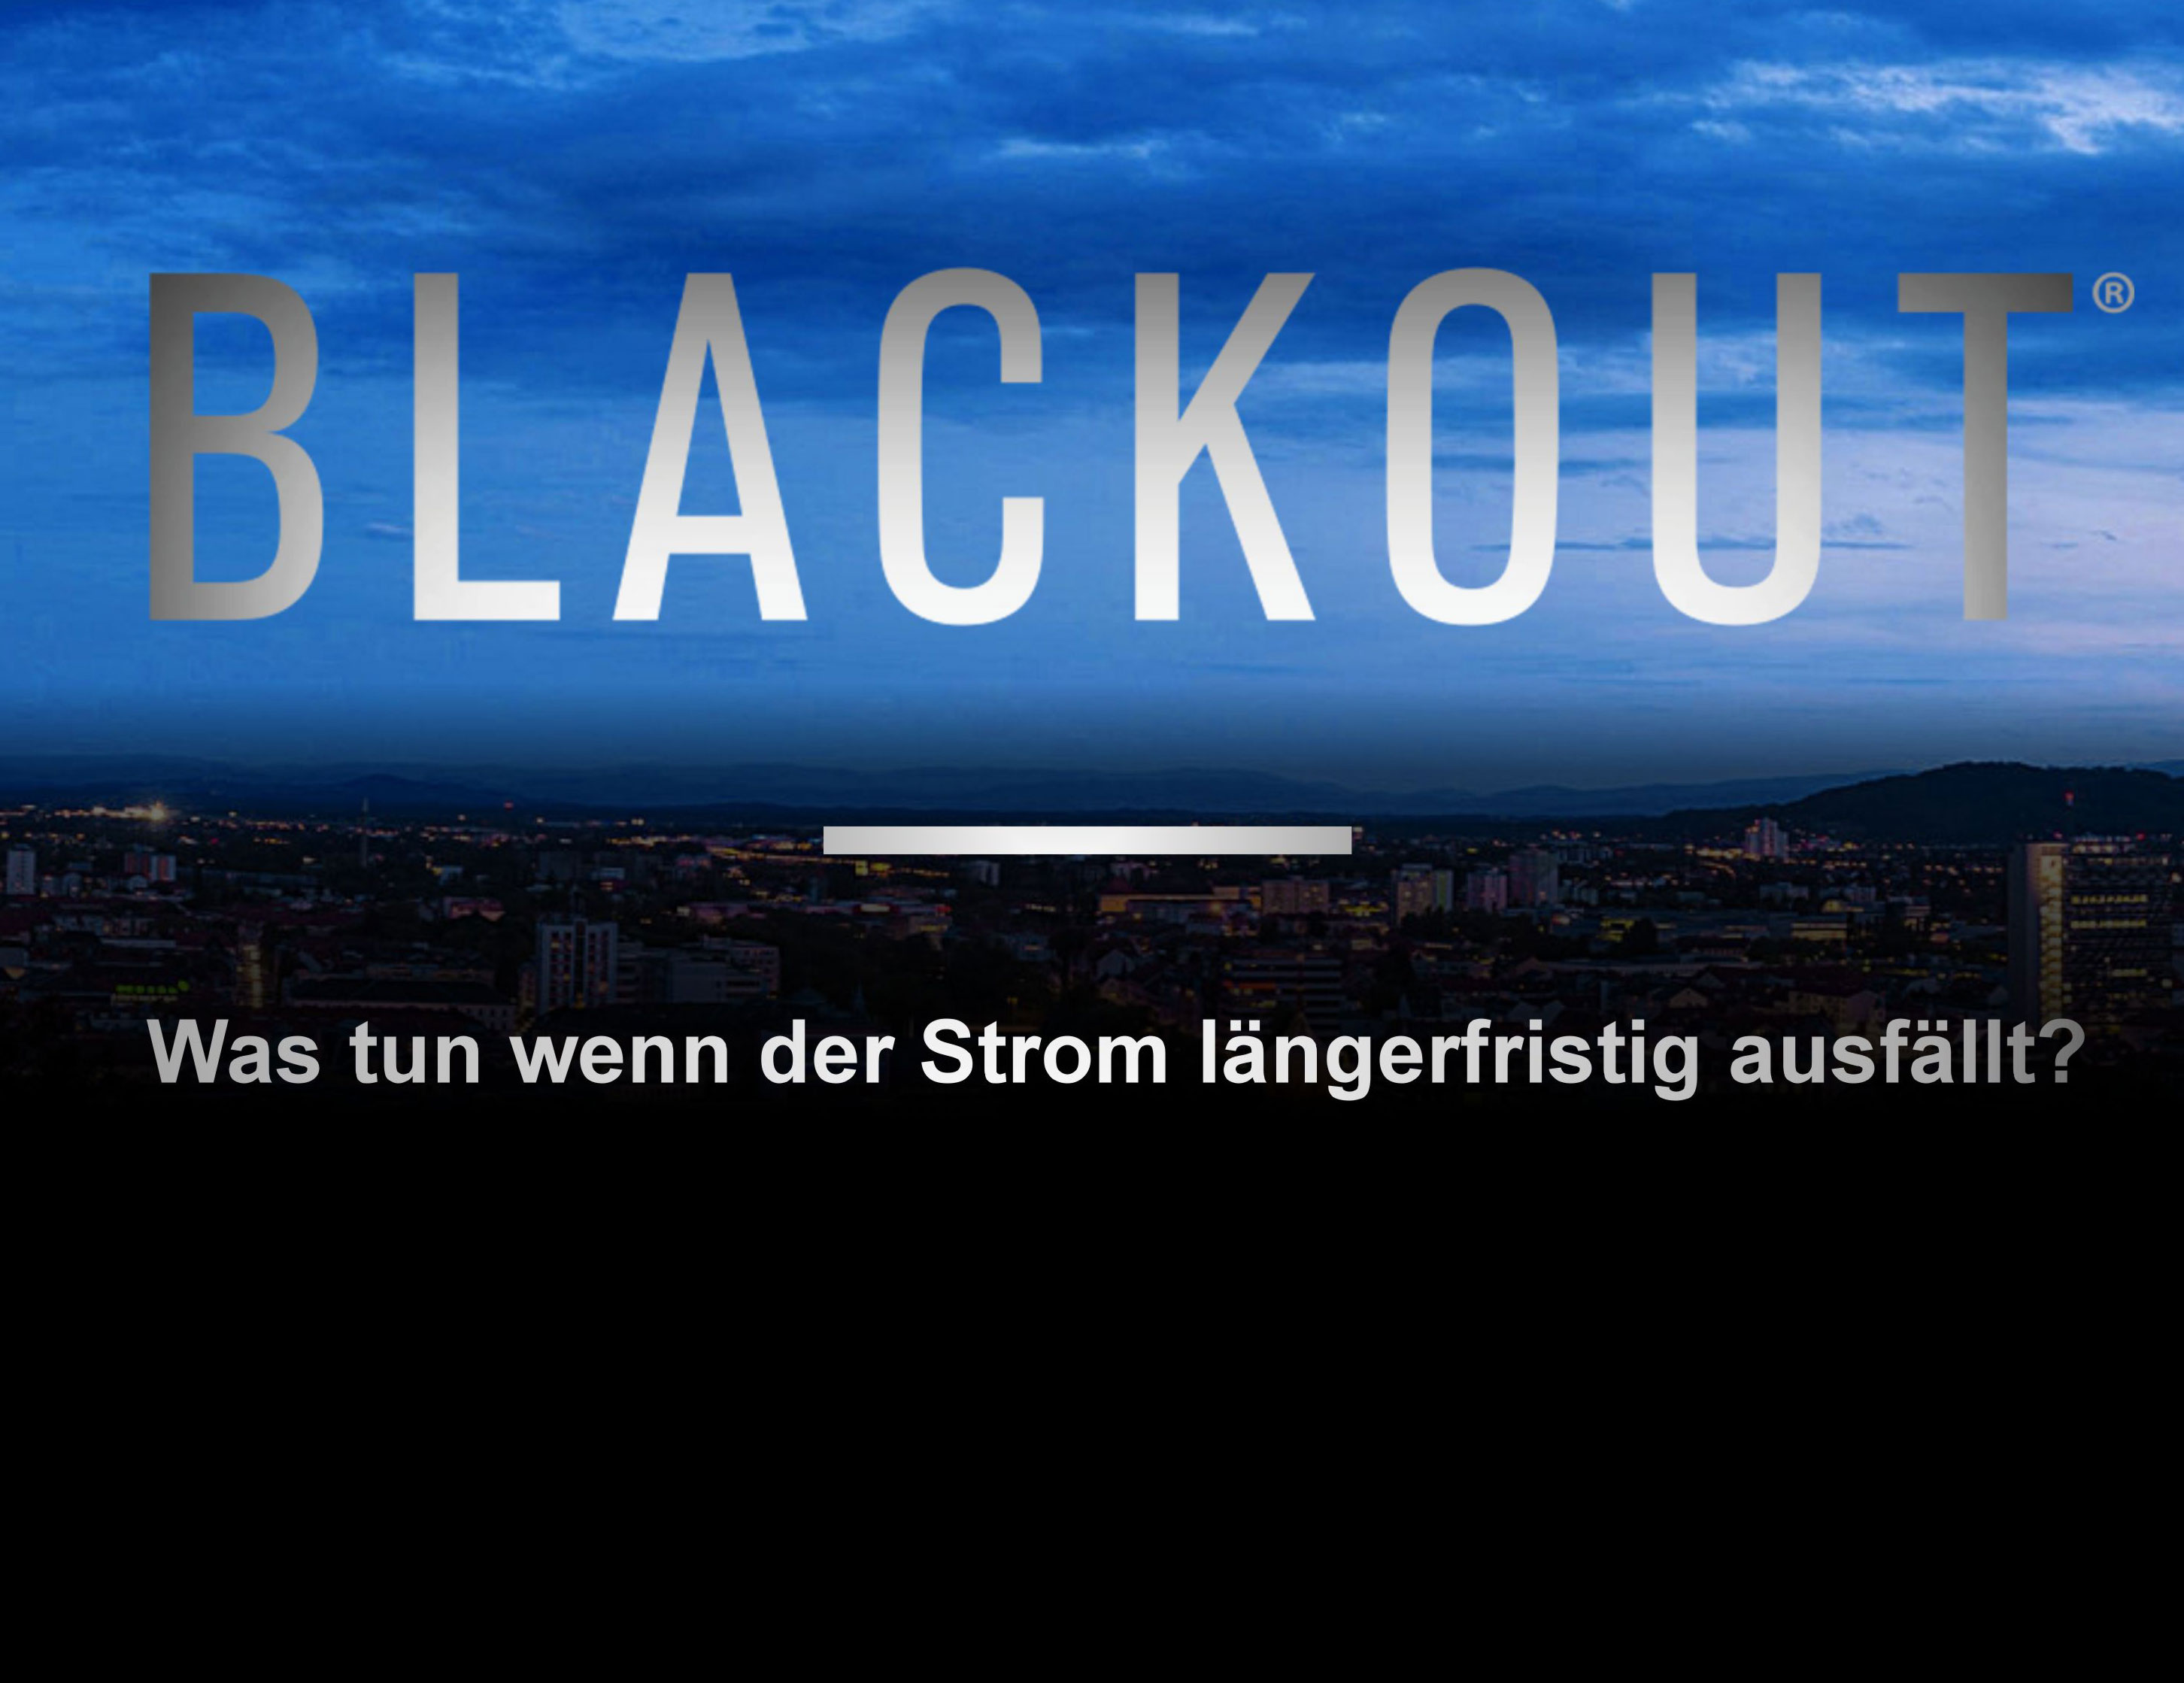 Blackout 2